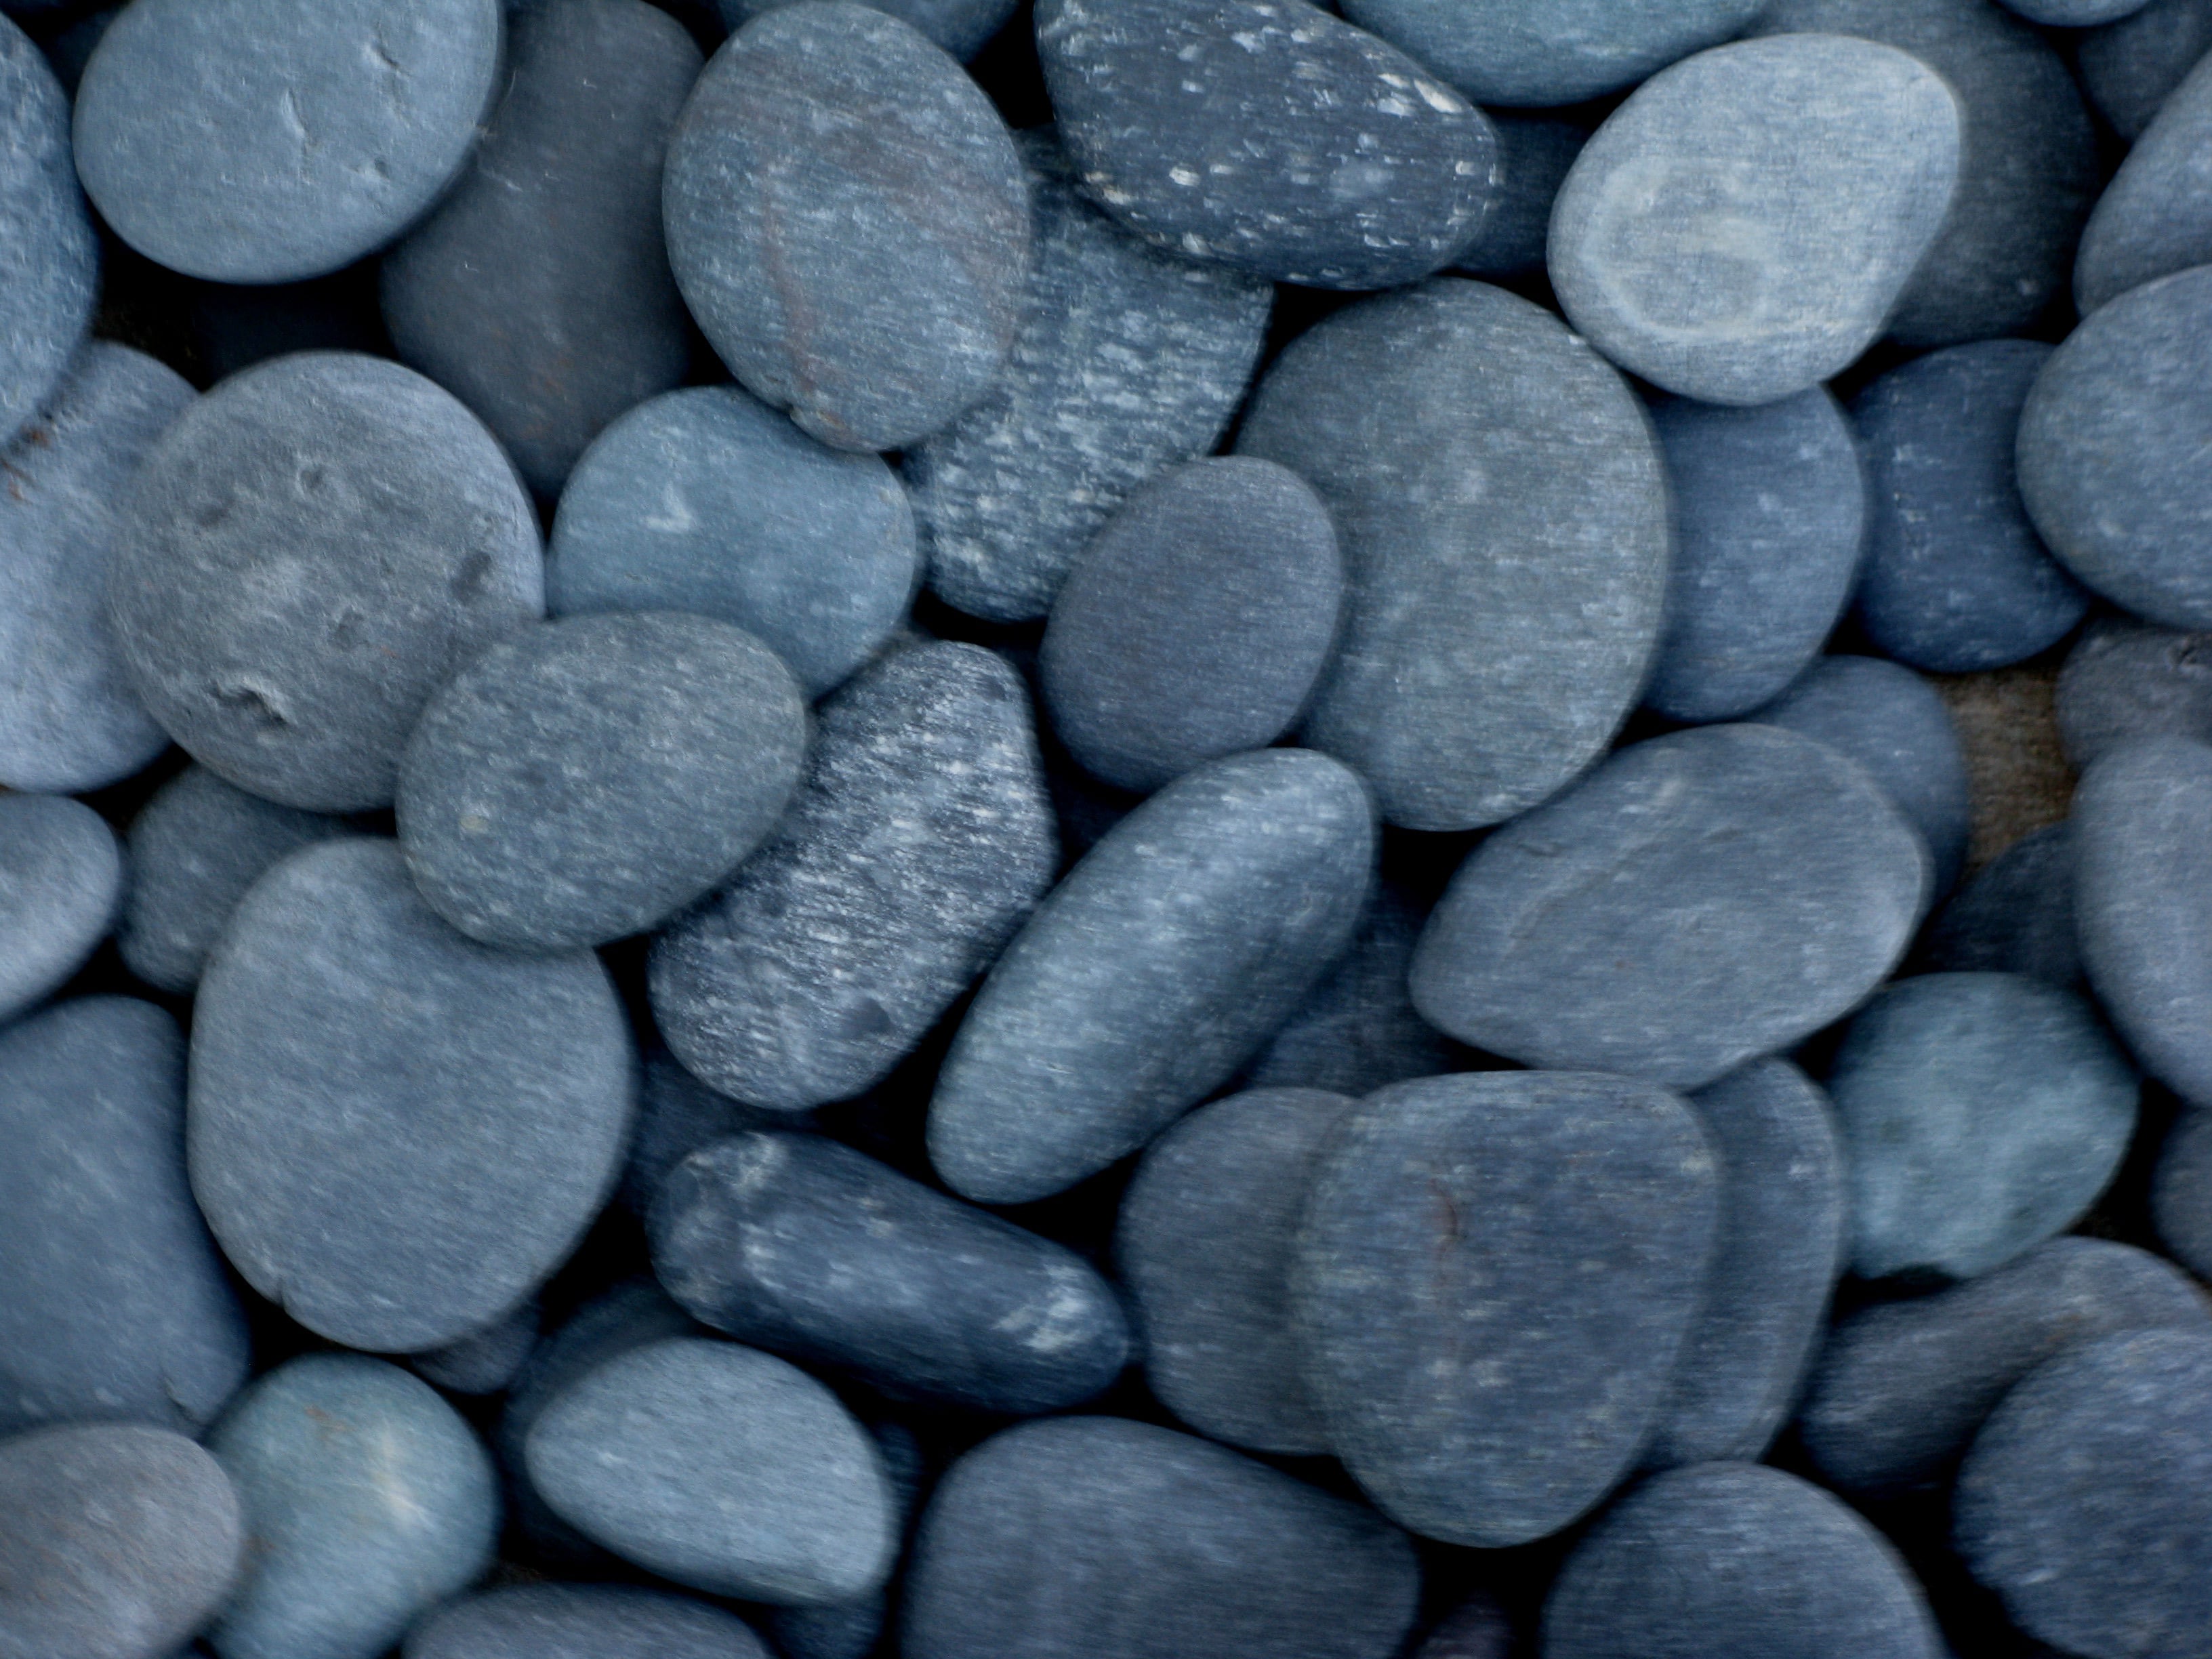 Black pebble stones photo